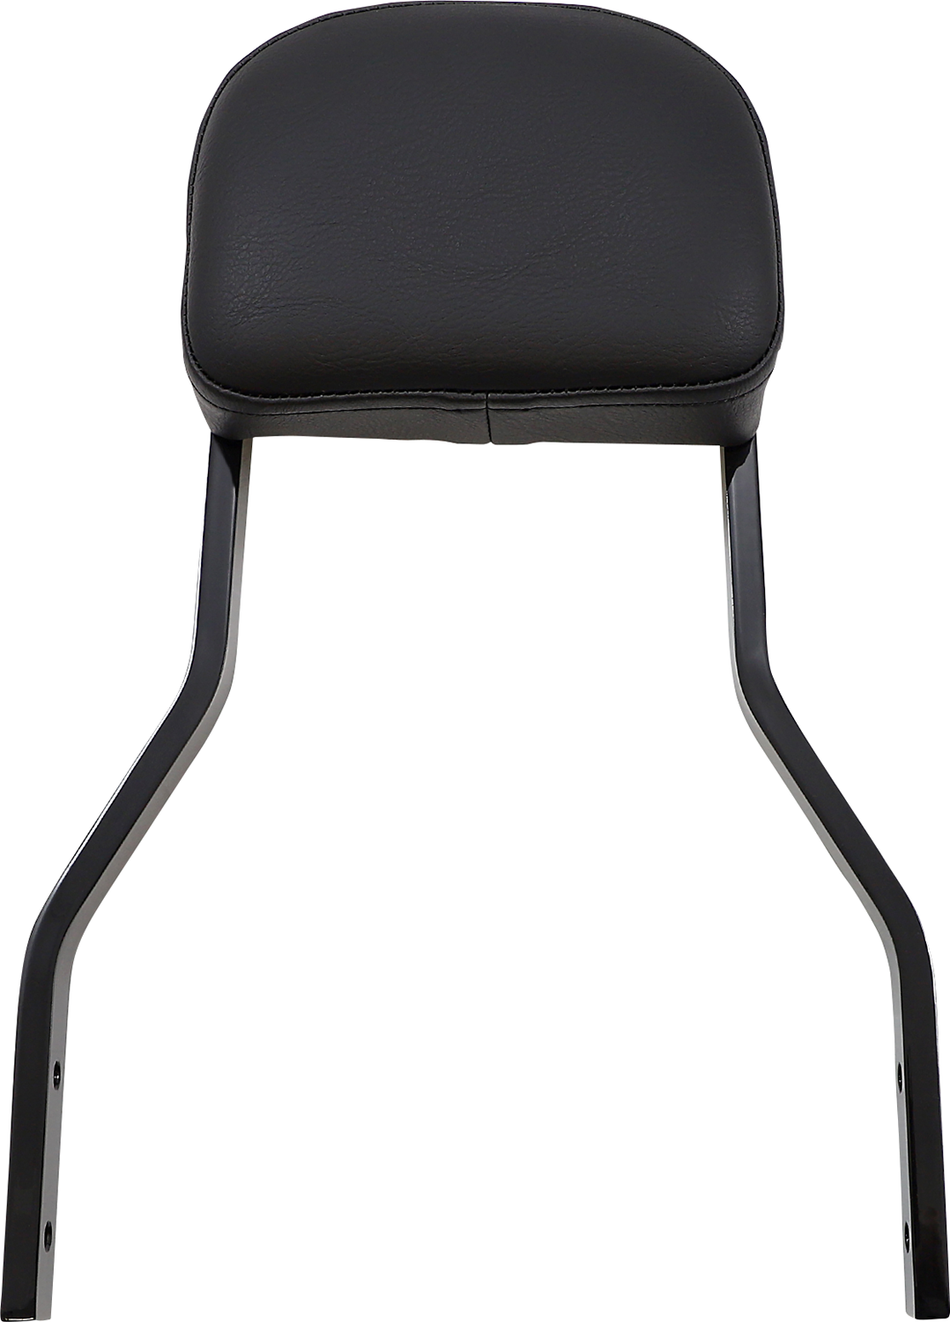 COBRA Backrest Kit - 14" - Black - Dyna 602-2044B